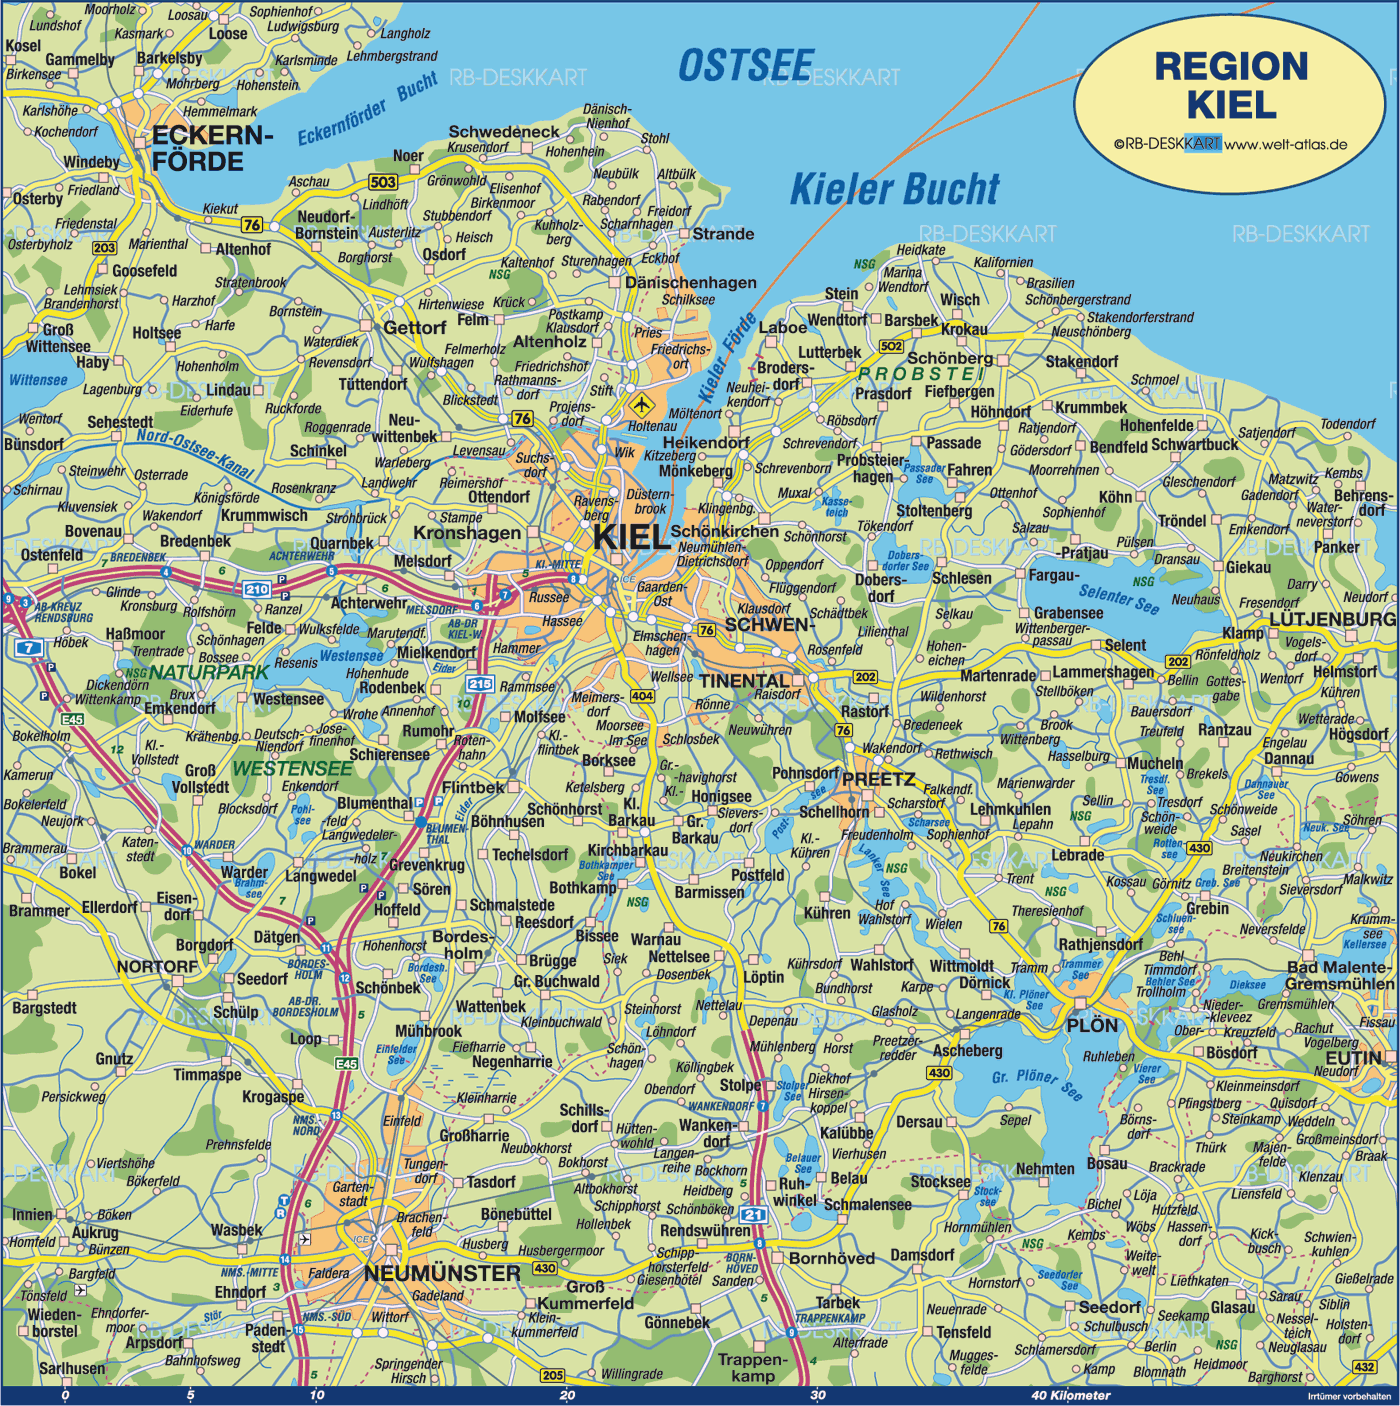 Kiel area map